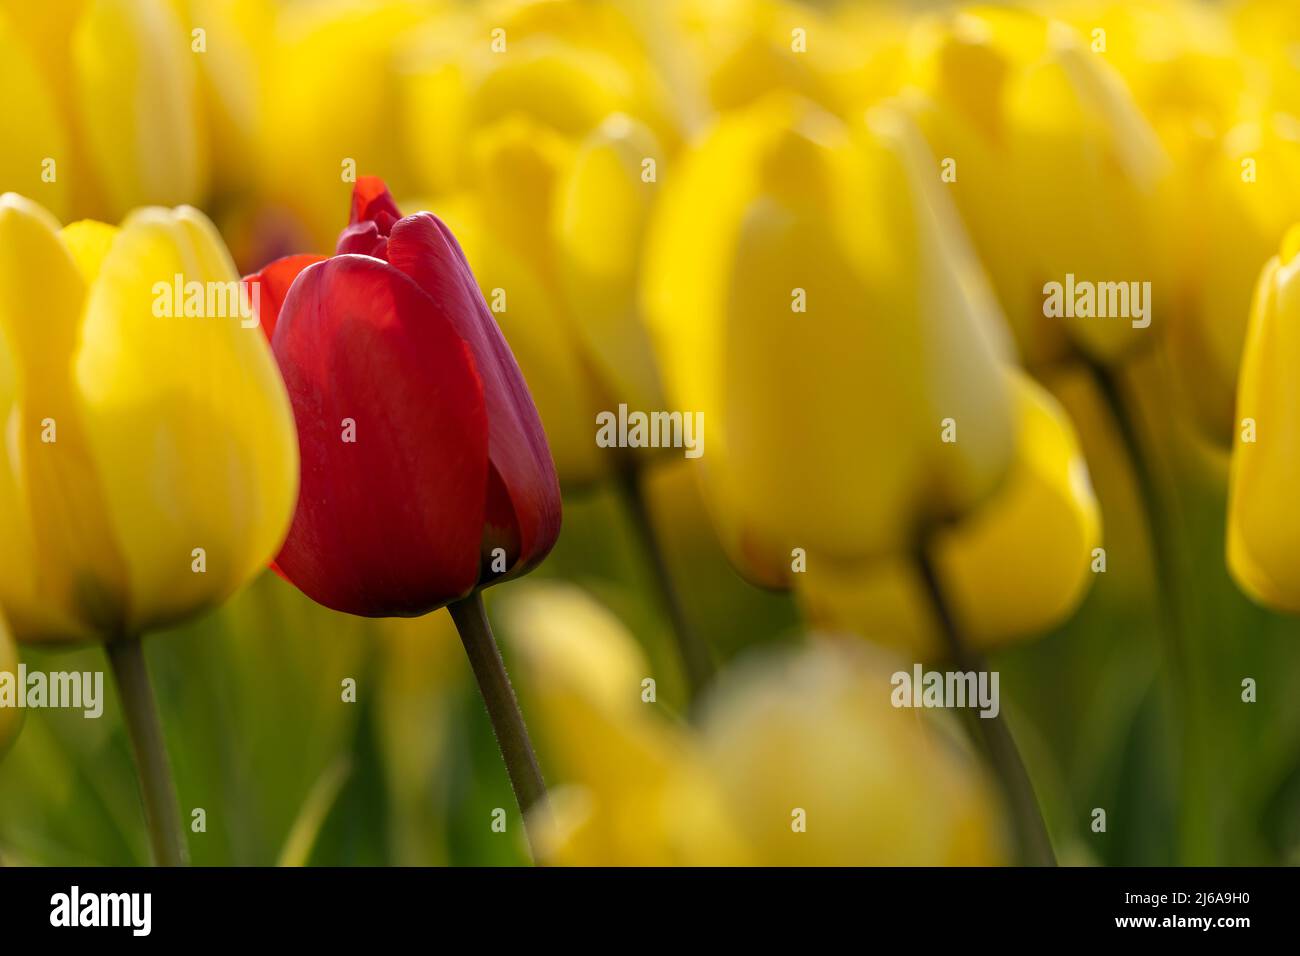 Sólo un tulipán rojo en un campo de tulipanes amarillos Foto de stock